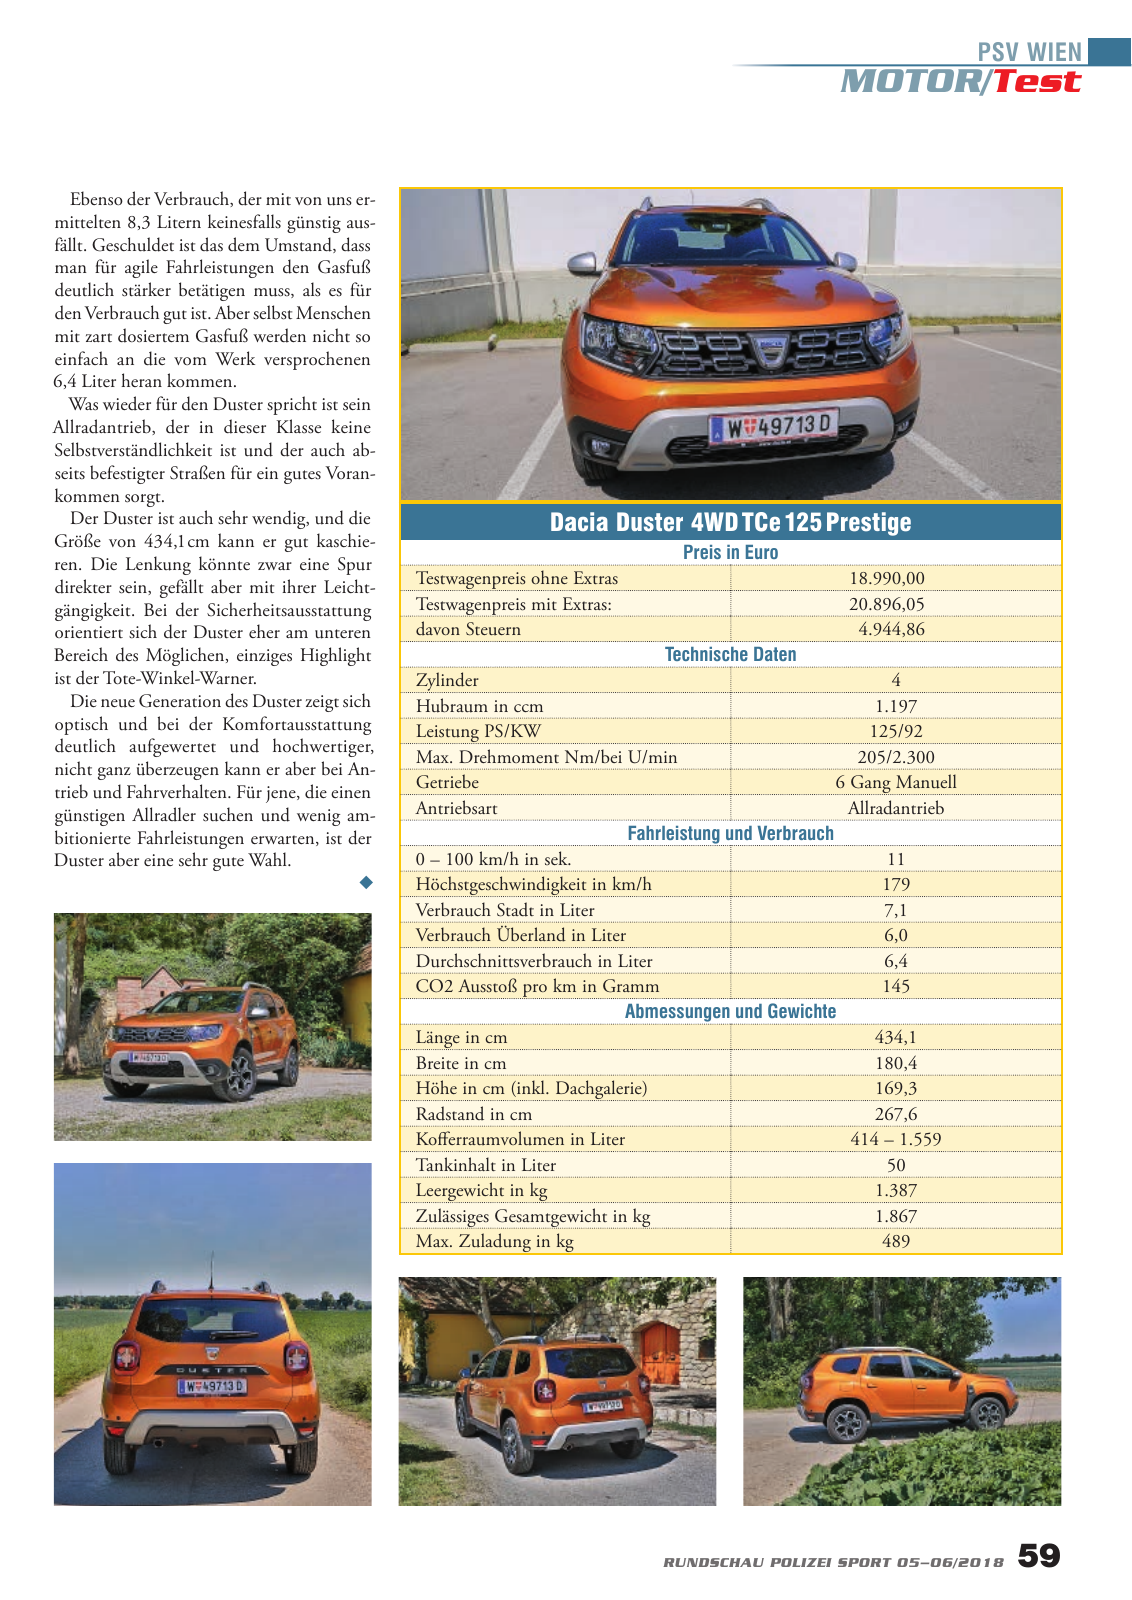 Vorschau Rundschau Polizei Sport 05-06/2018 Seite 59